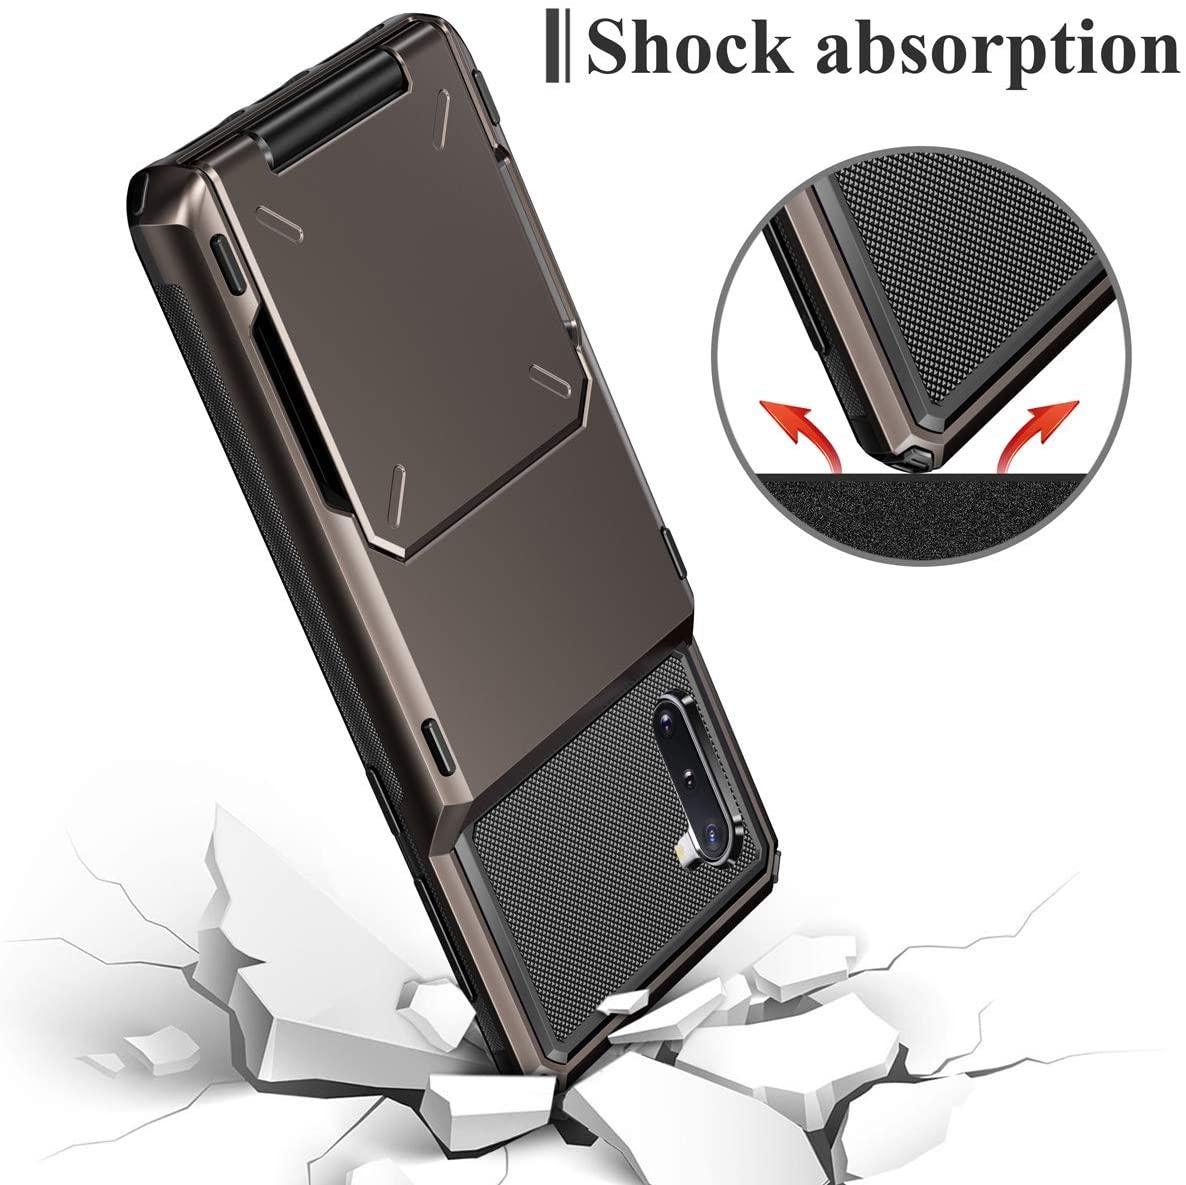 Slide Armor Wallet Card Holder Case For Samsung - Blue - SuperShop.Rocks